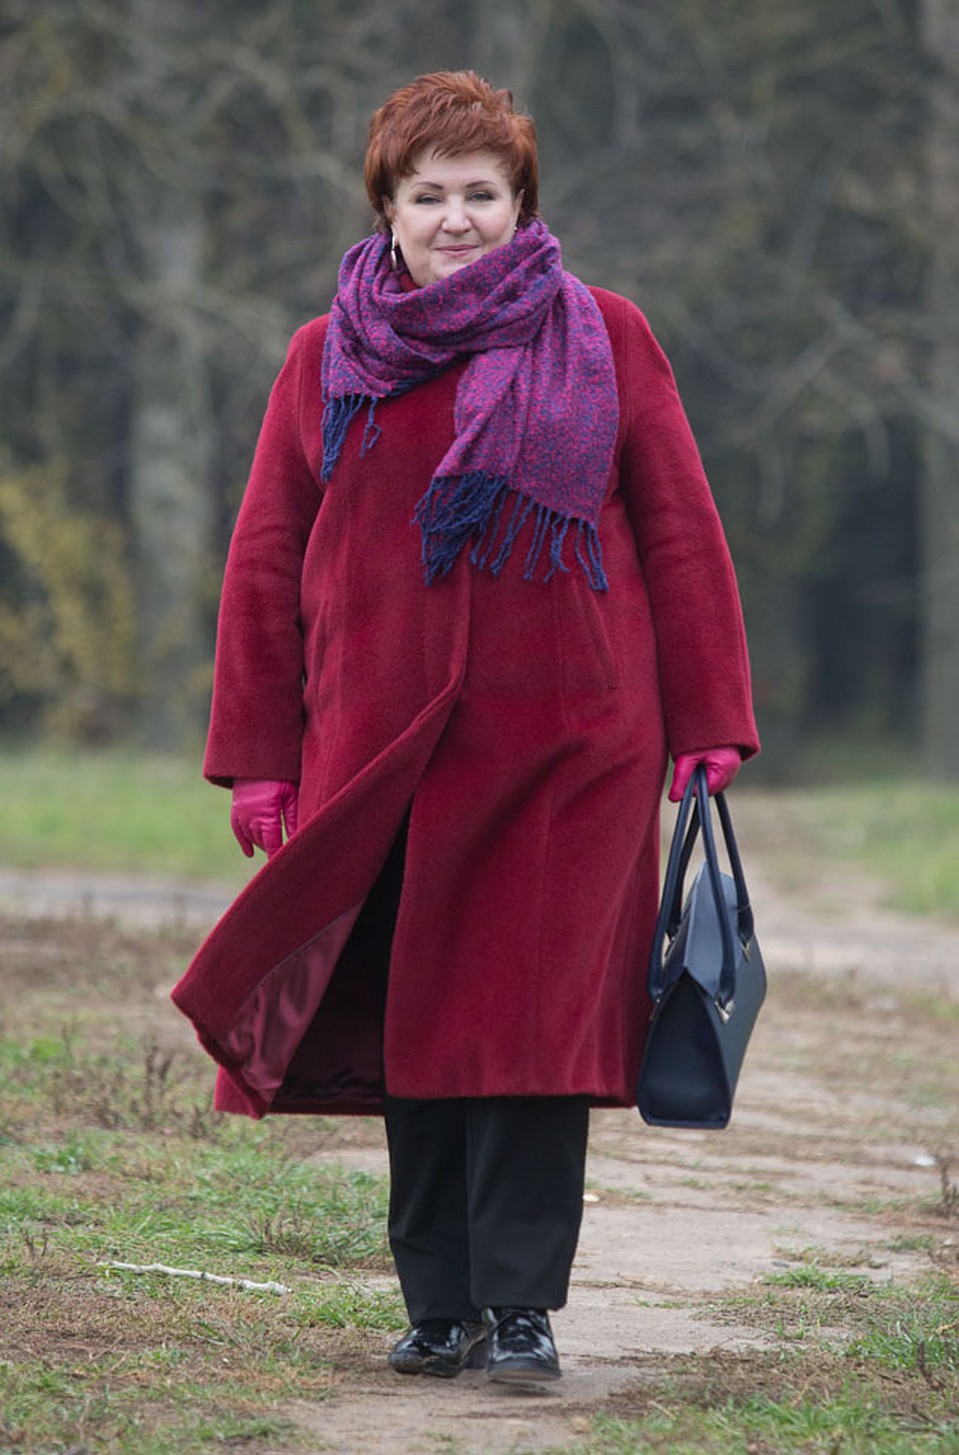 К розово-синему шарфу стилист подобрала розовые перчатки и синюю сумку. Фото: Павел МАРТИНЧИК